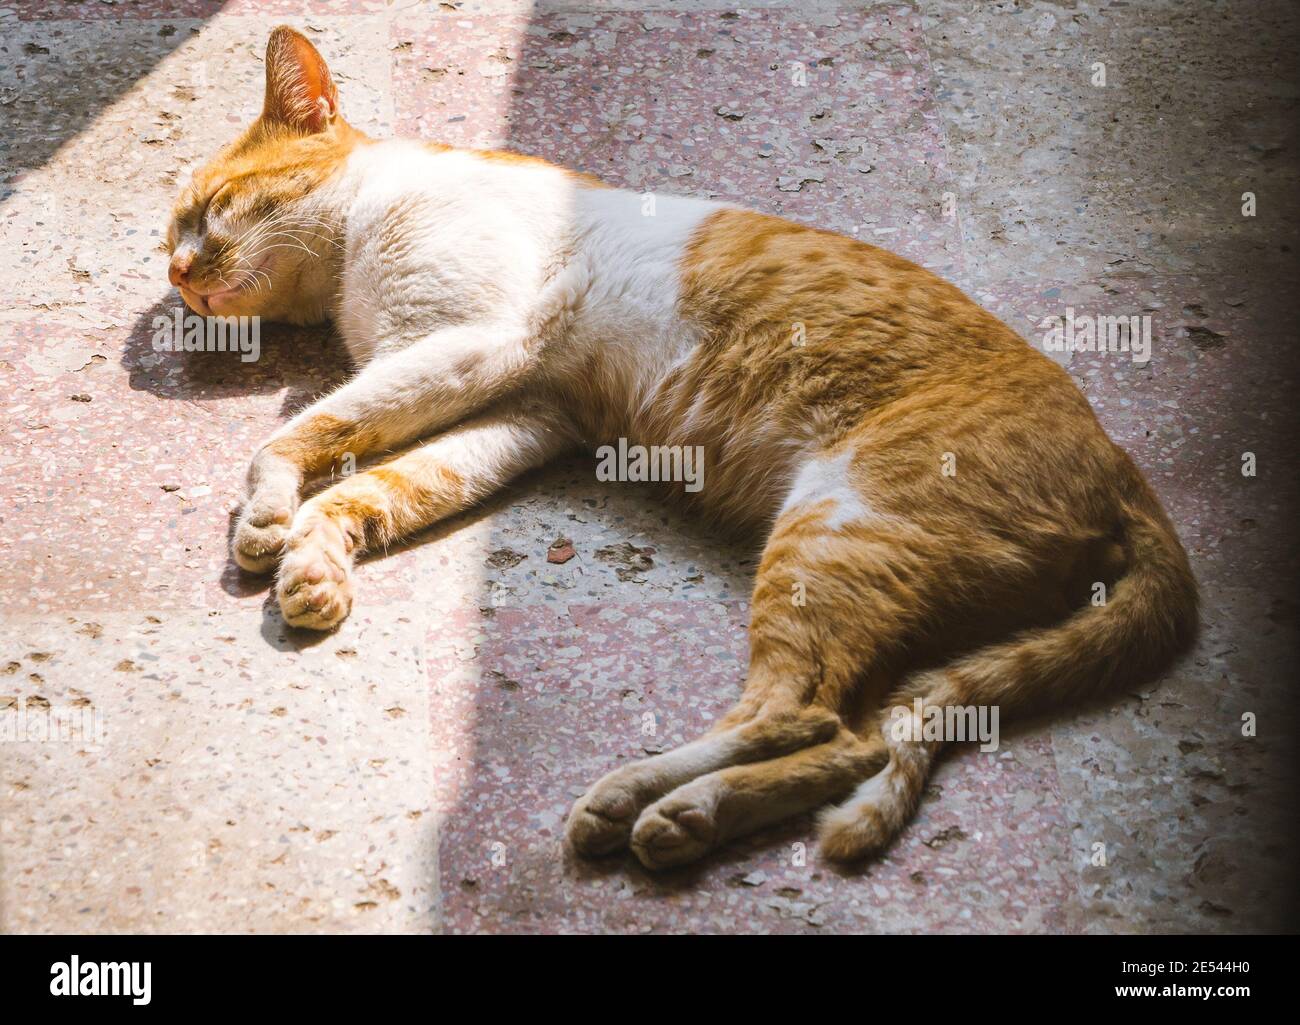 Eine orange und weiß gefärbte Katze, die auf einem Betonboden schläft. Ein Sonnenstrahl fällt teilweise auf die Katze. Stockfoto